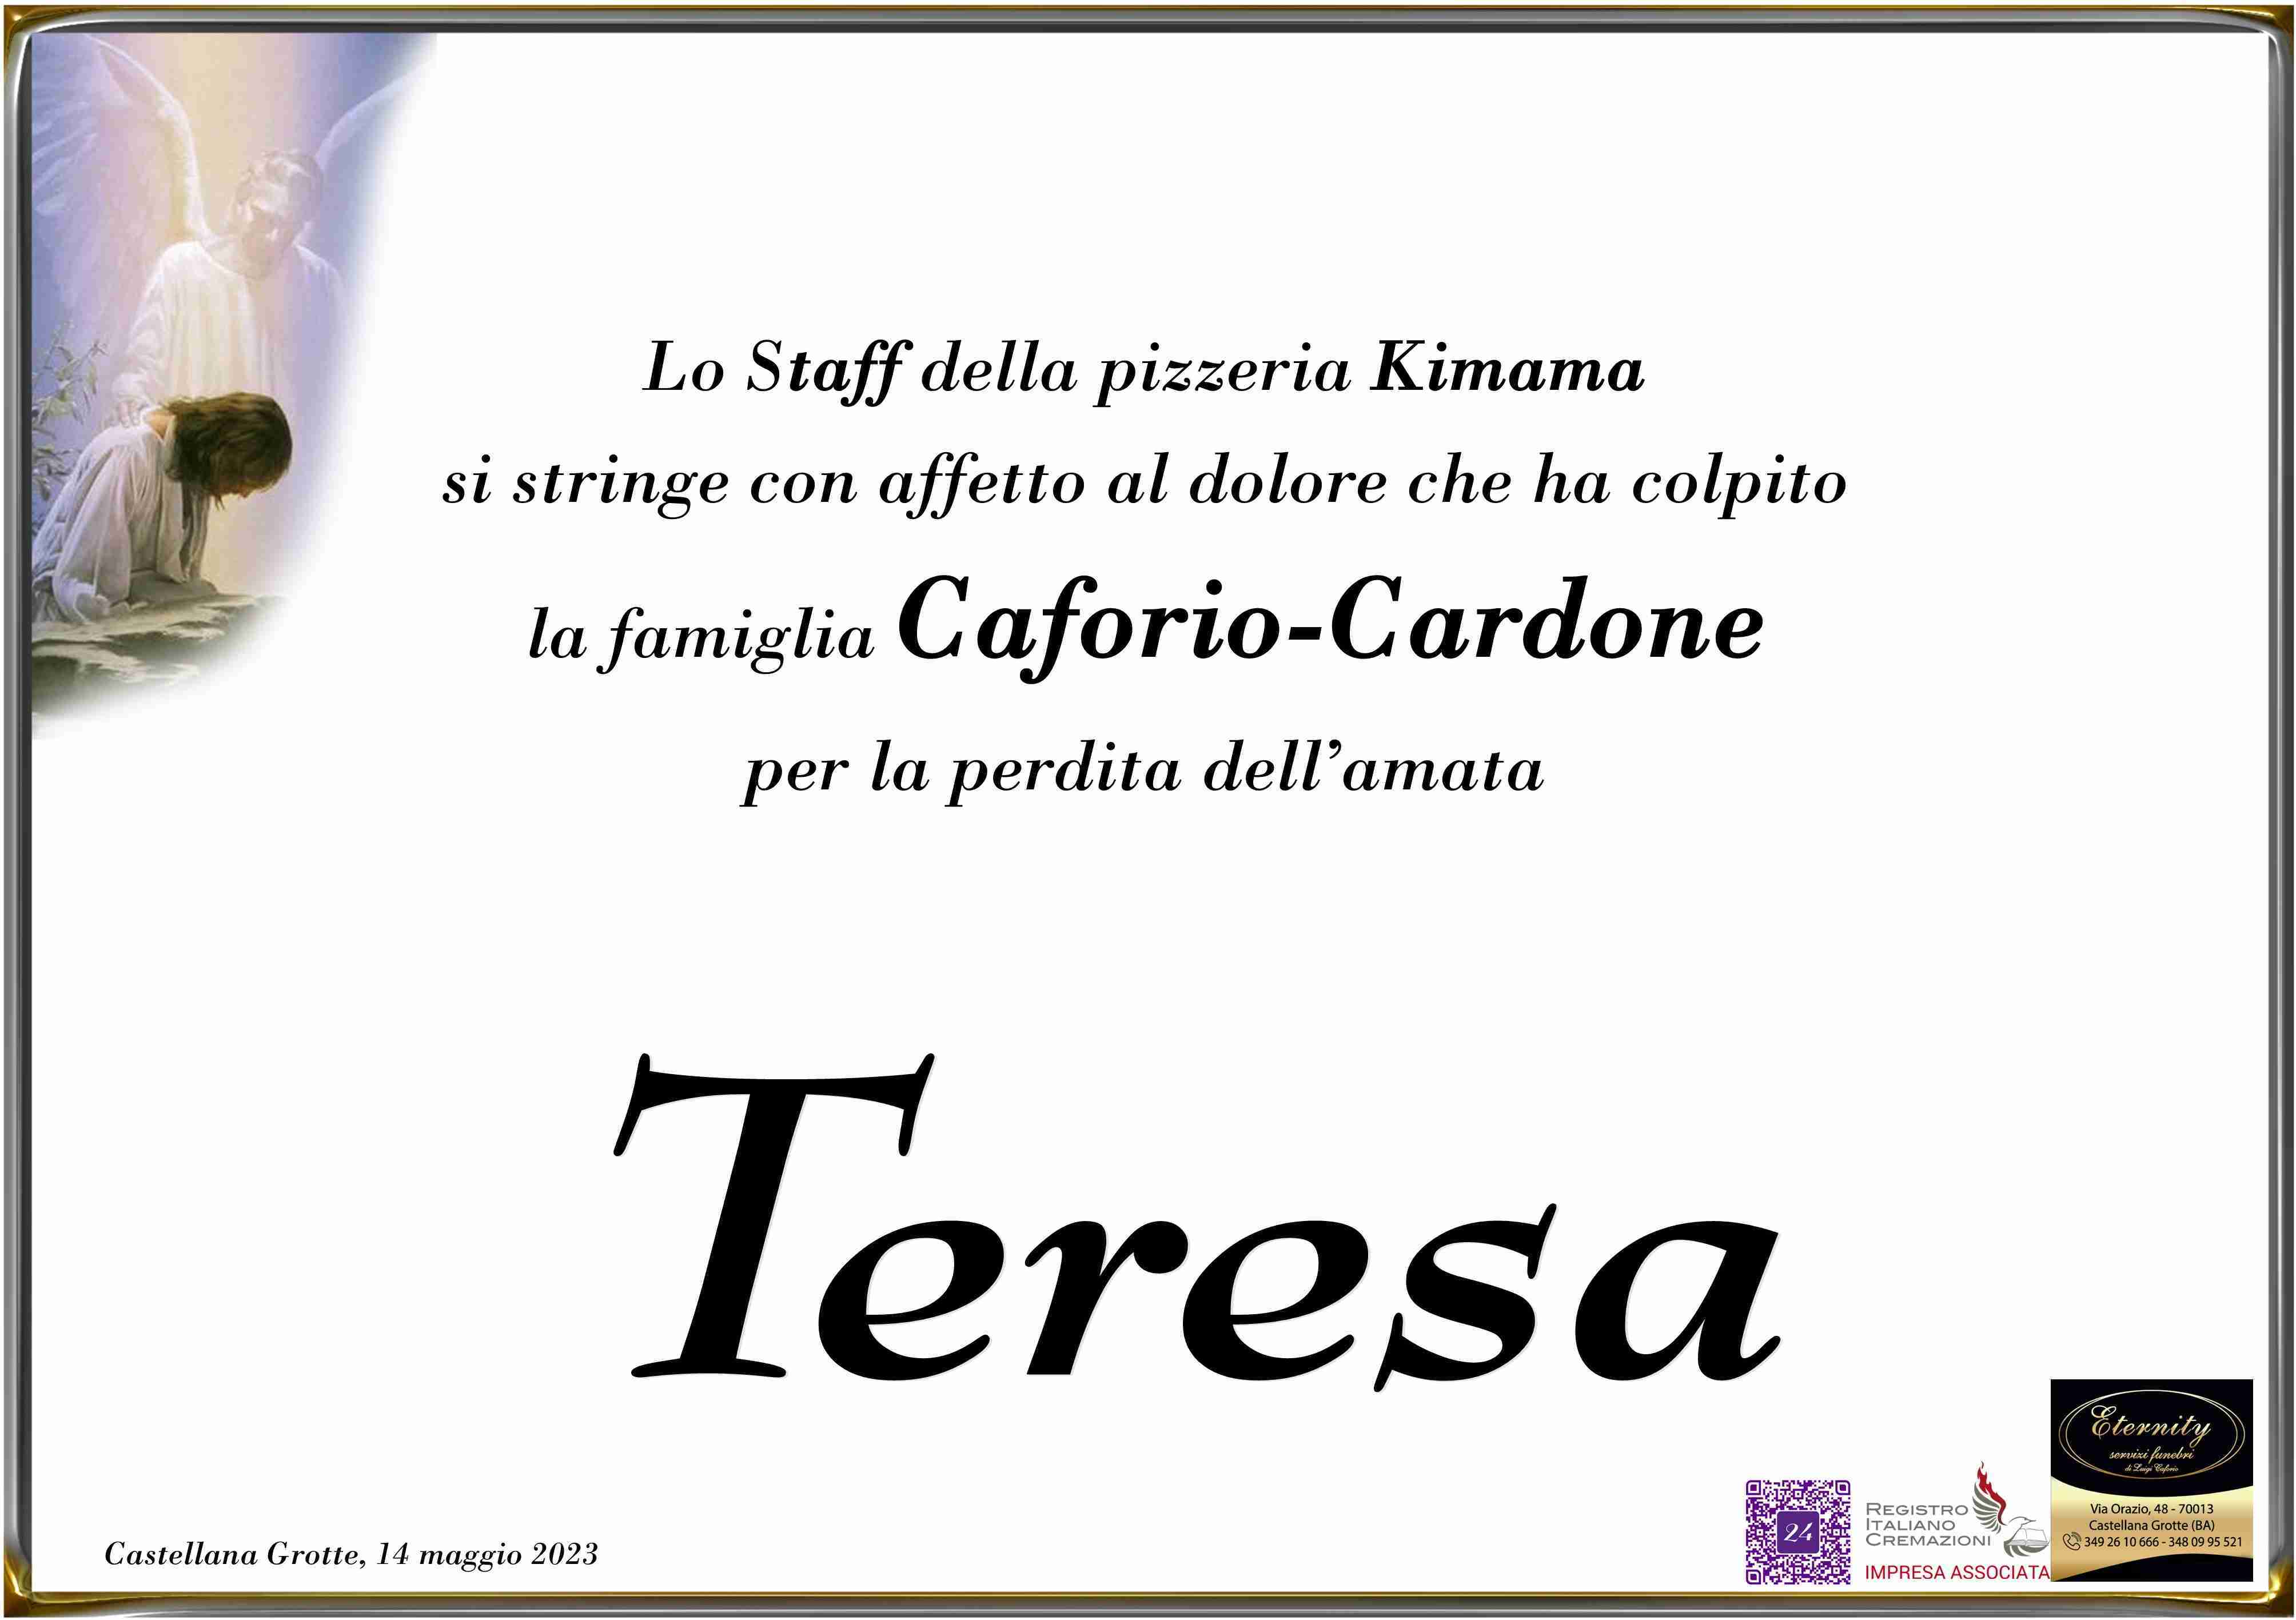 Teresa Caforio